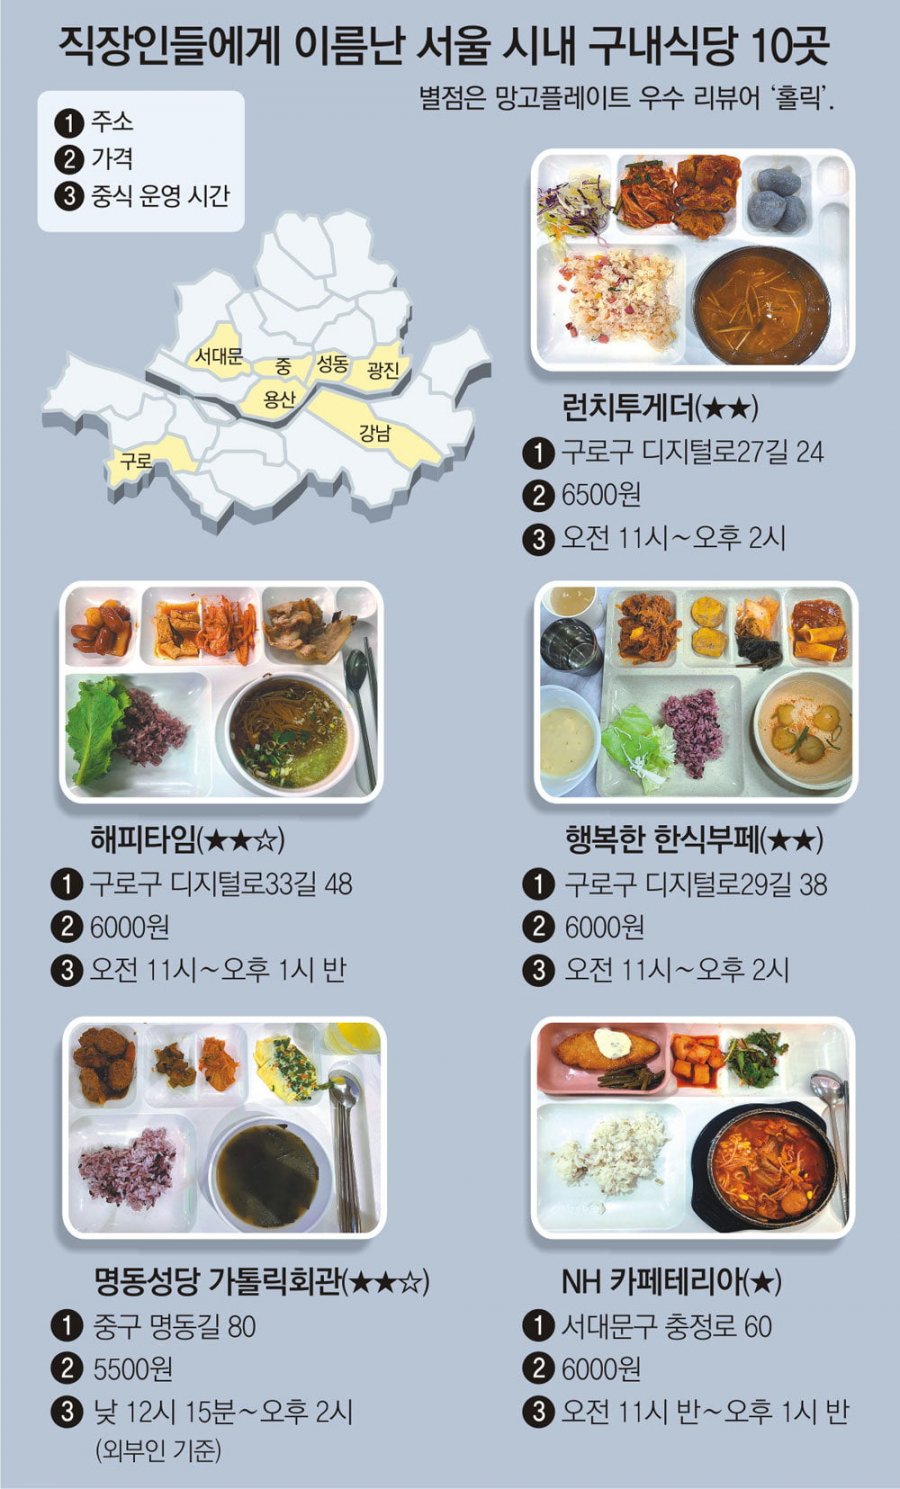 직장인들에게 이름난 서울 구내식당 맛집 10곳 - 에누리 쇼핑지식 자유게시판